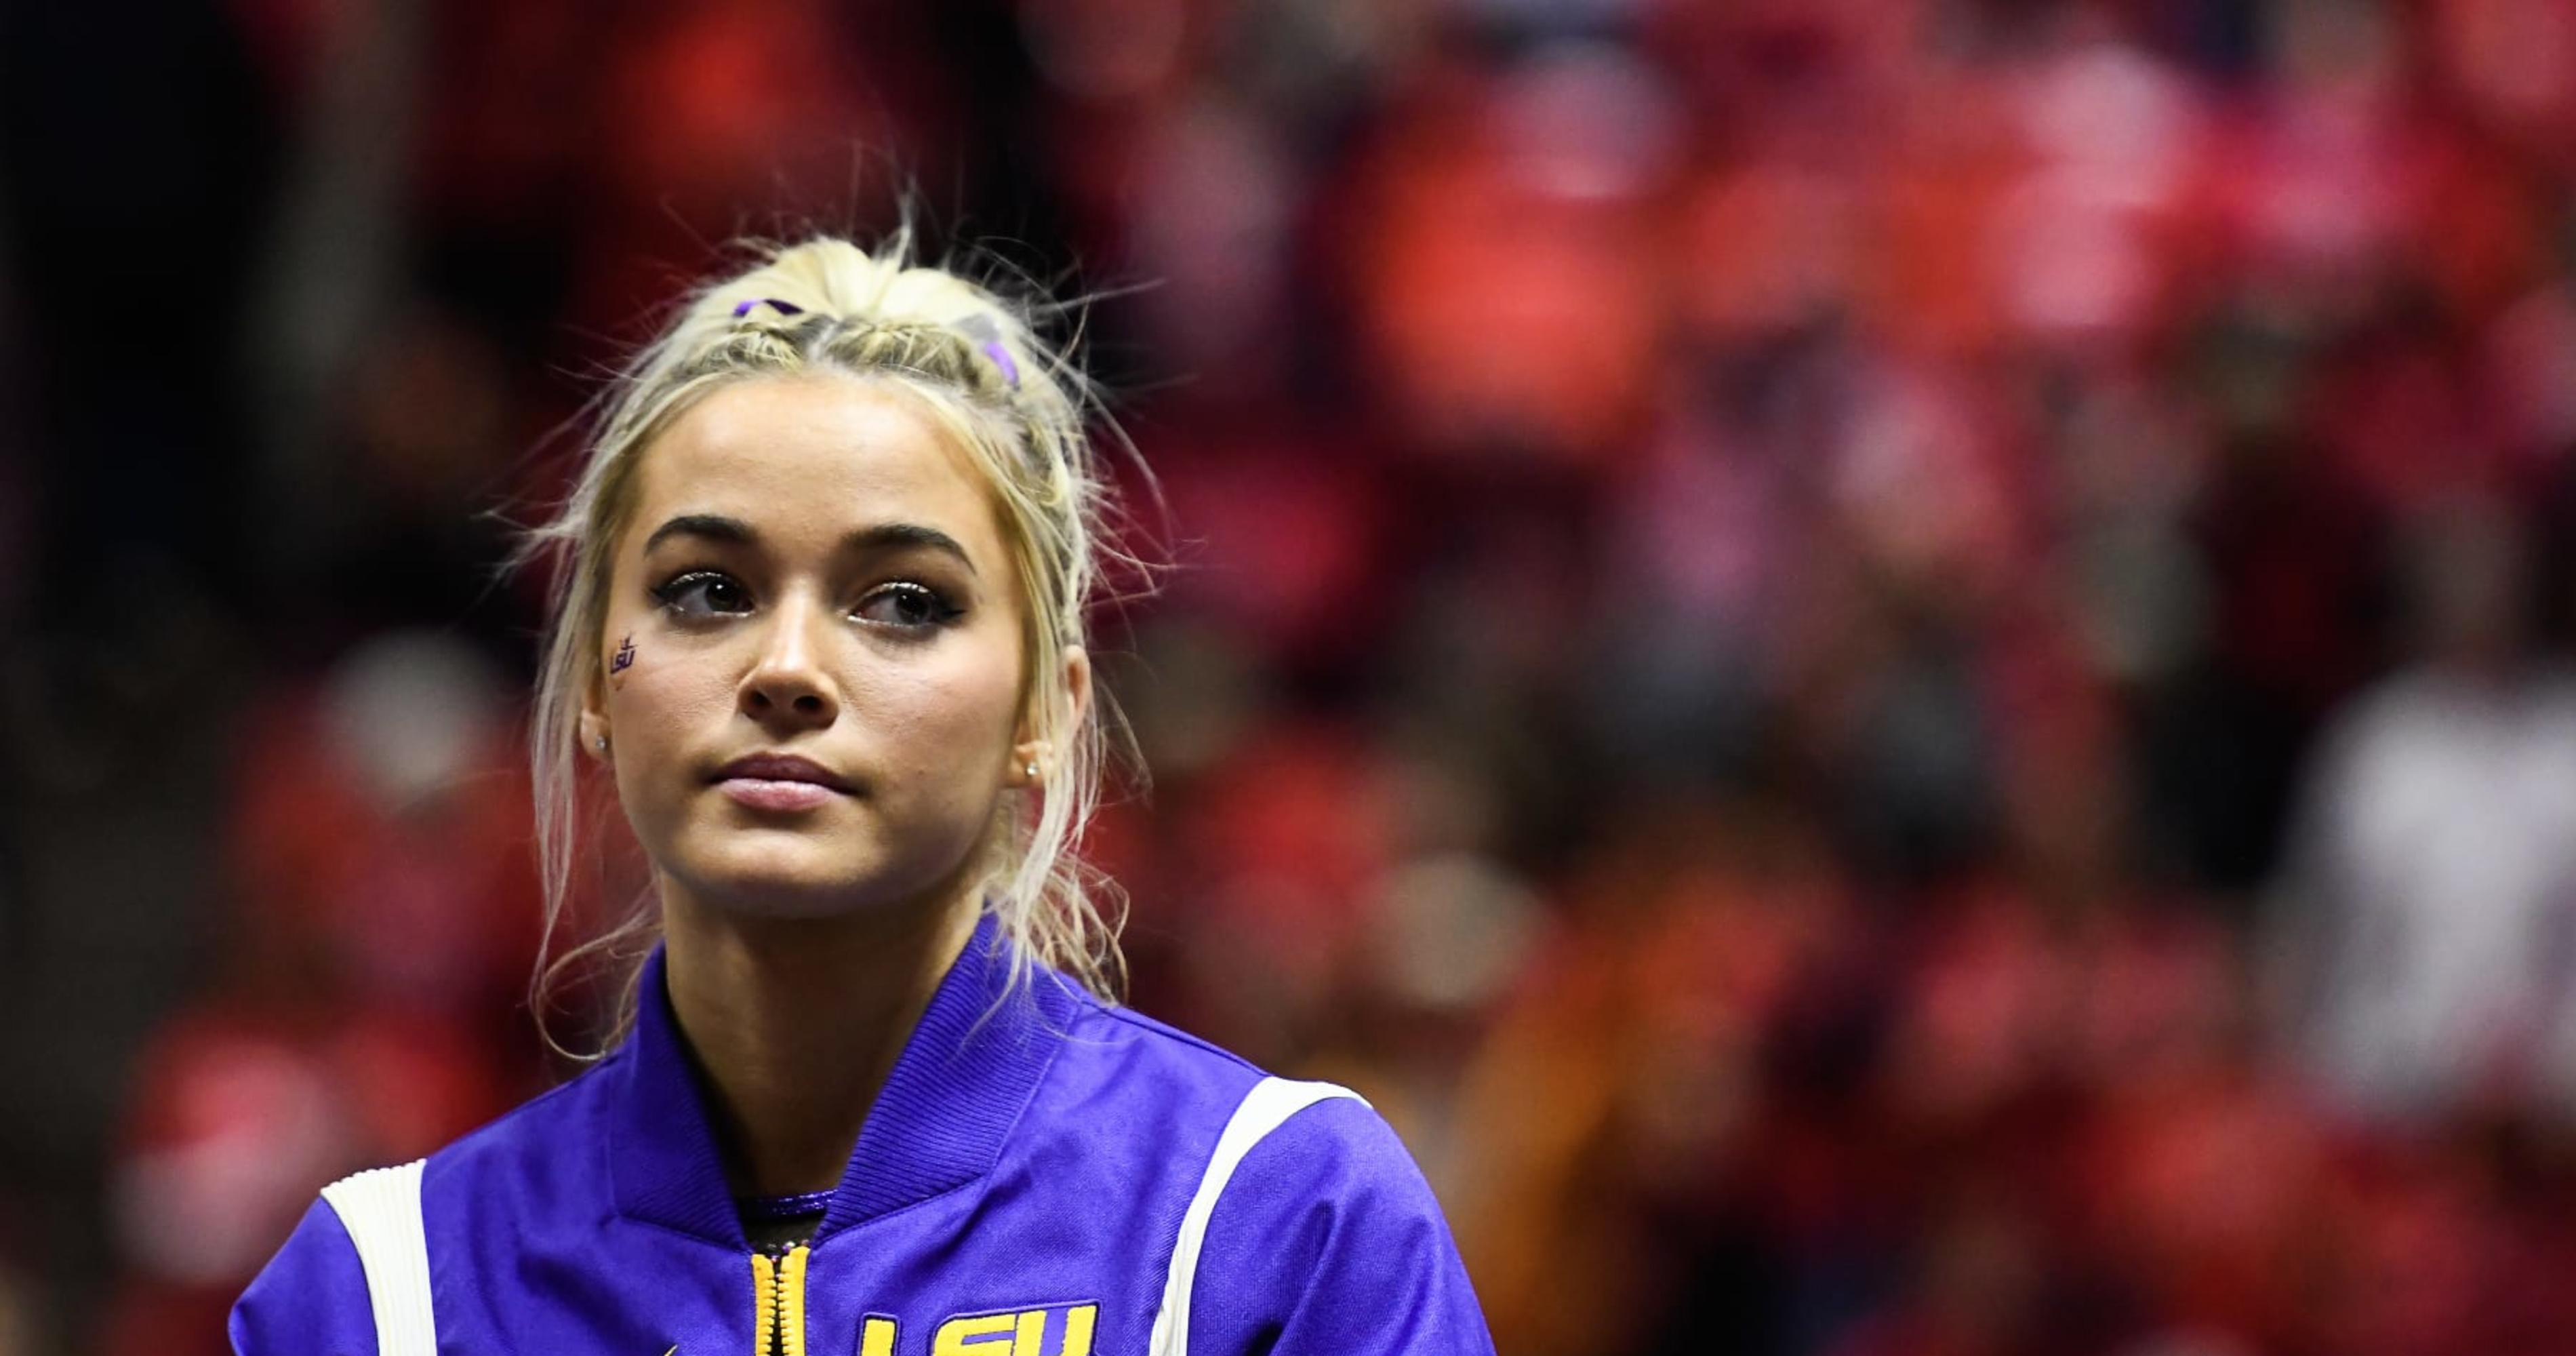 LSU Gymnast Olivia Dunne Asks Fans for Respect After Disruptive Group